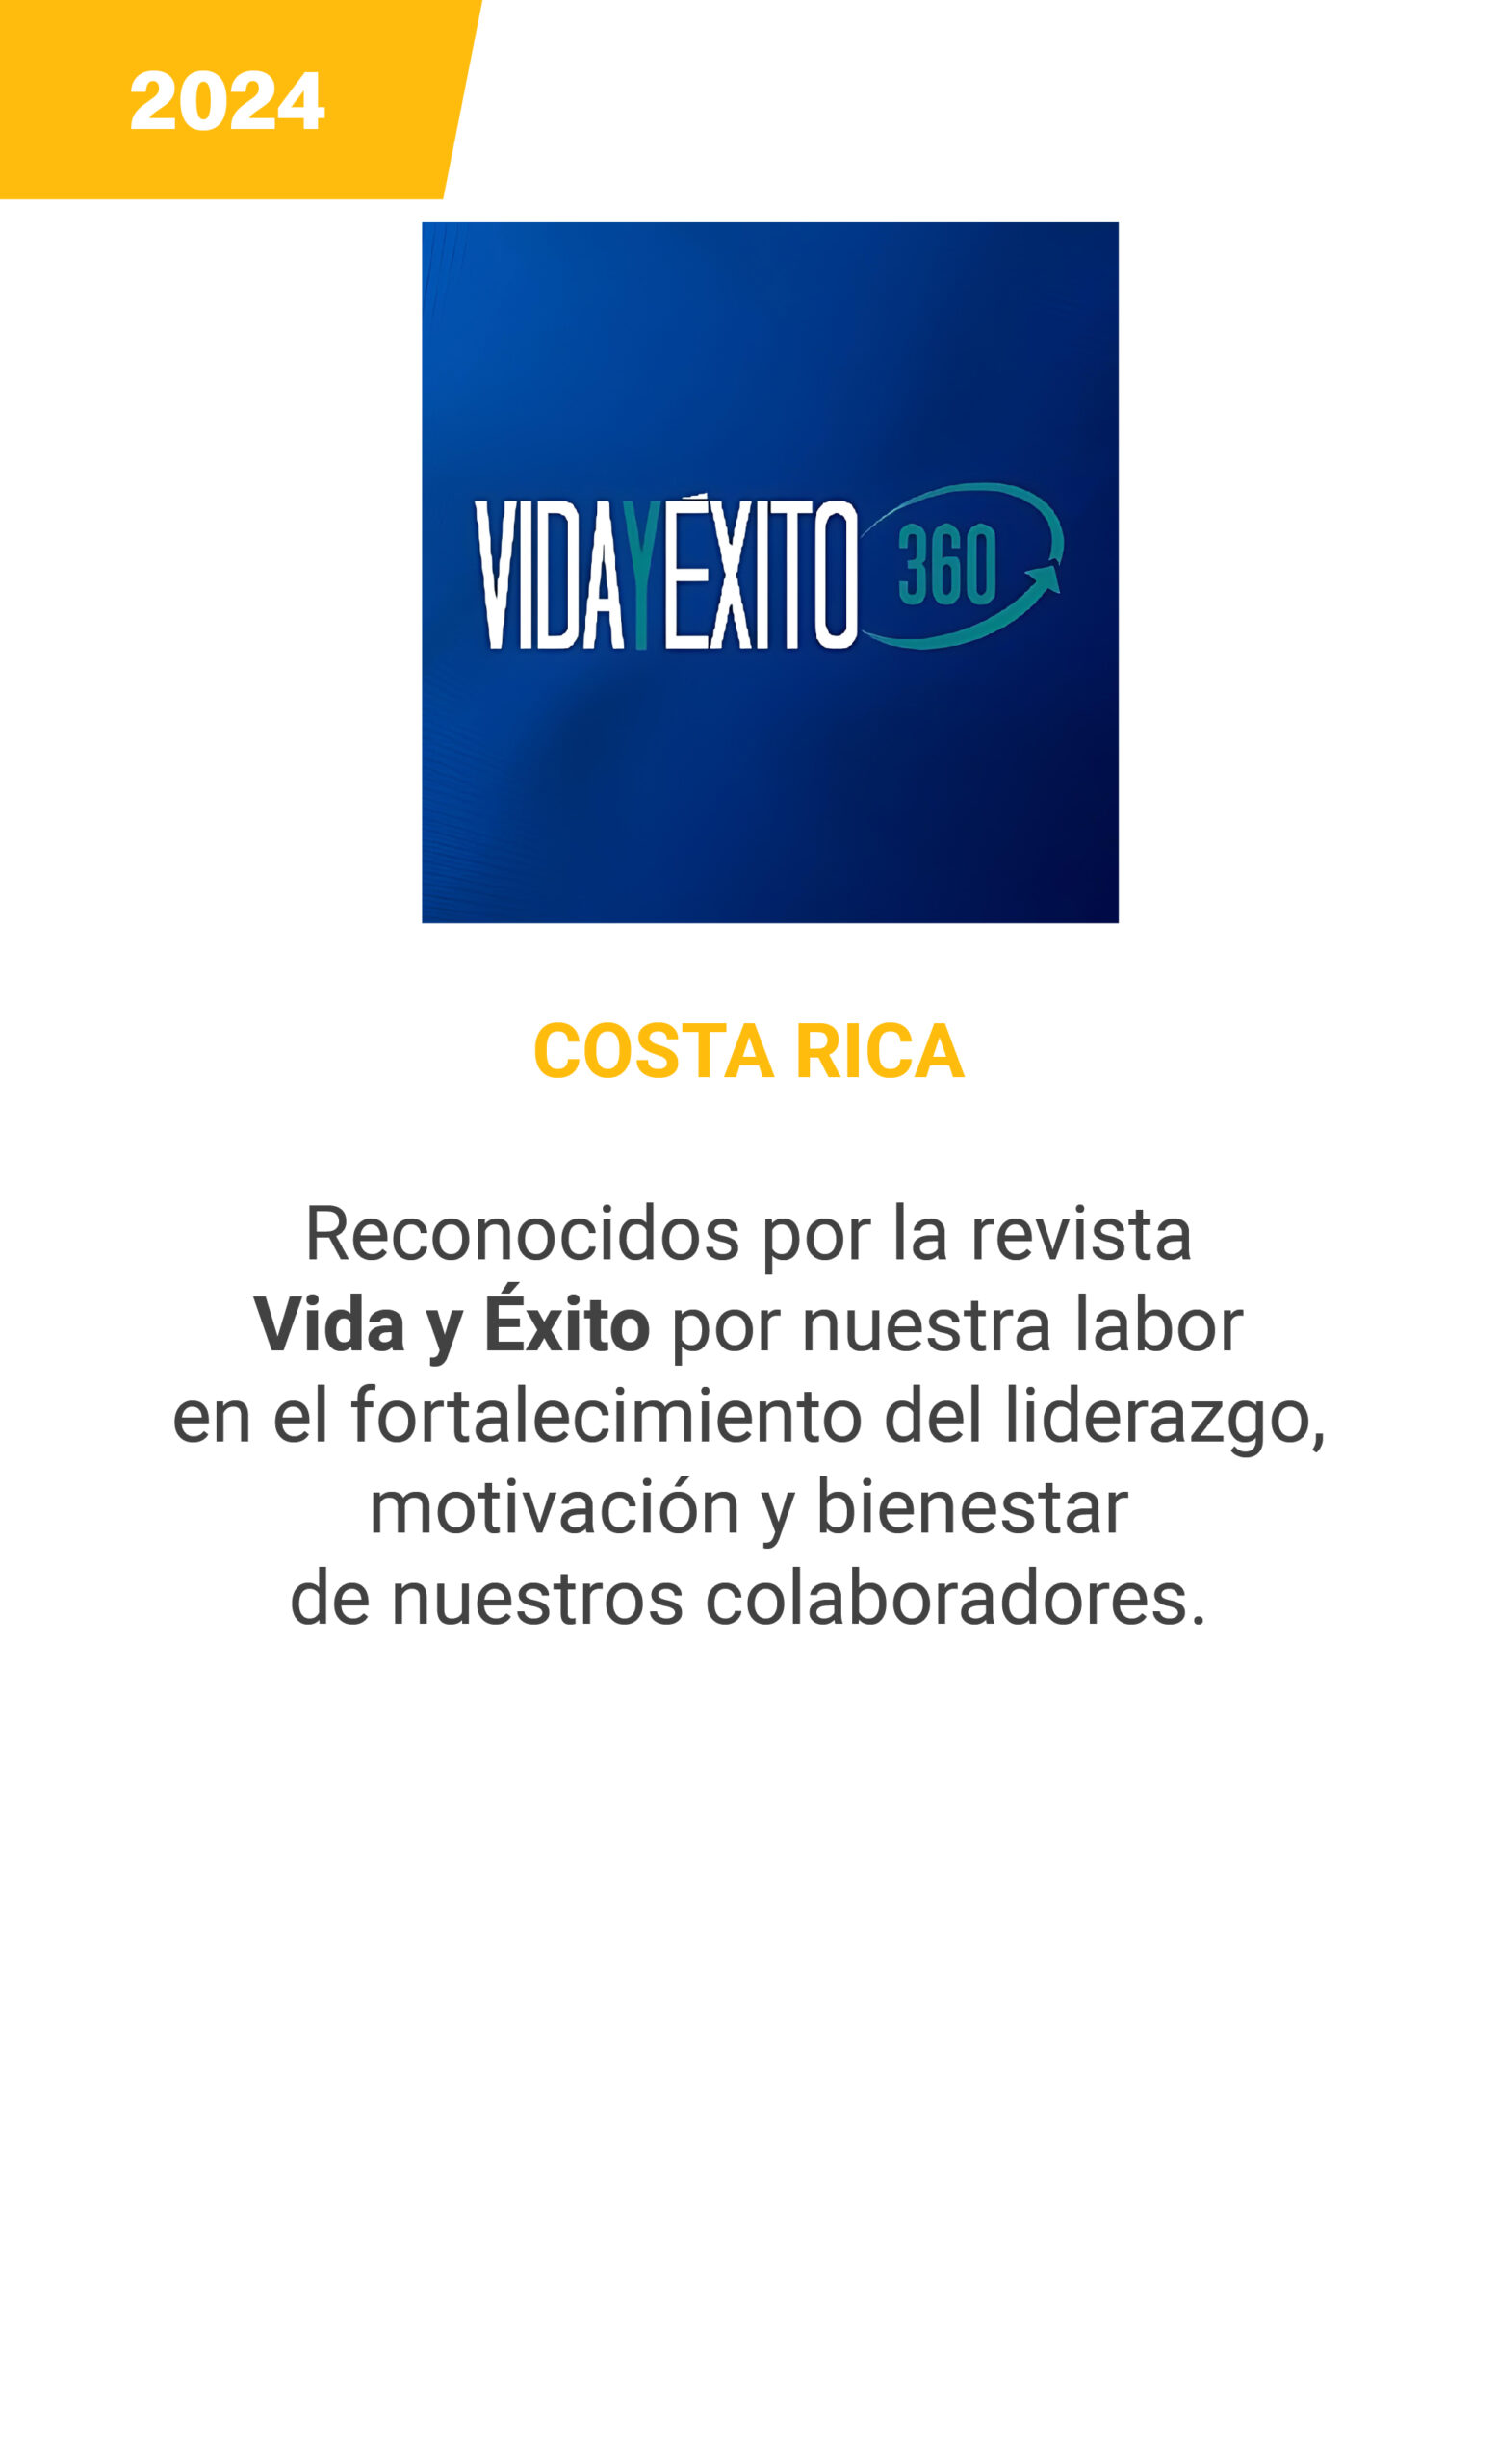 Vida y exito - Costa Rica - 2024 - mobile